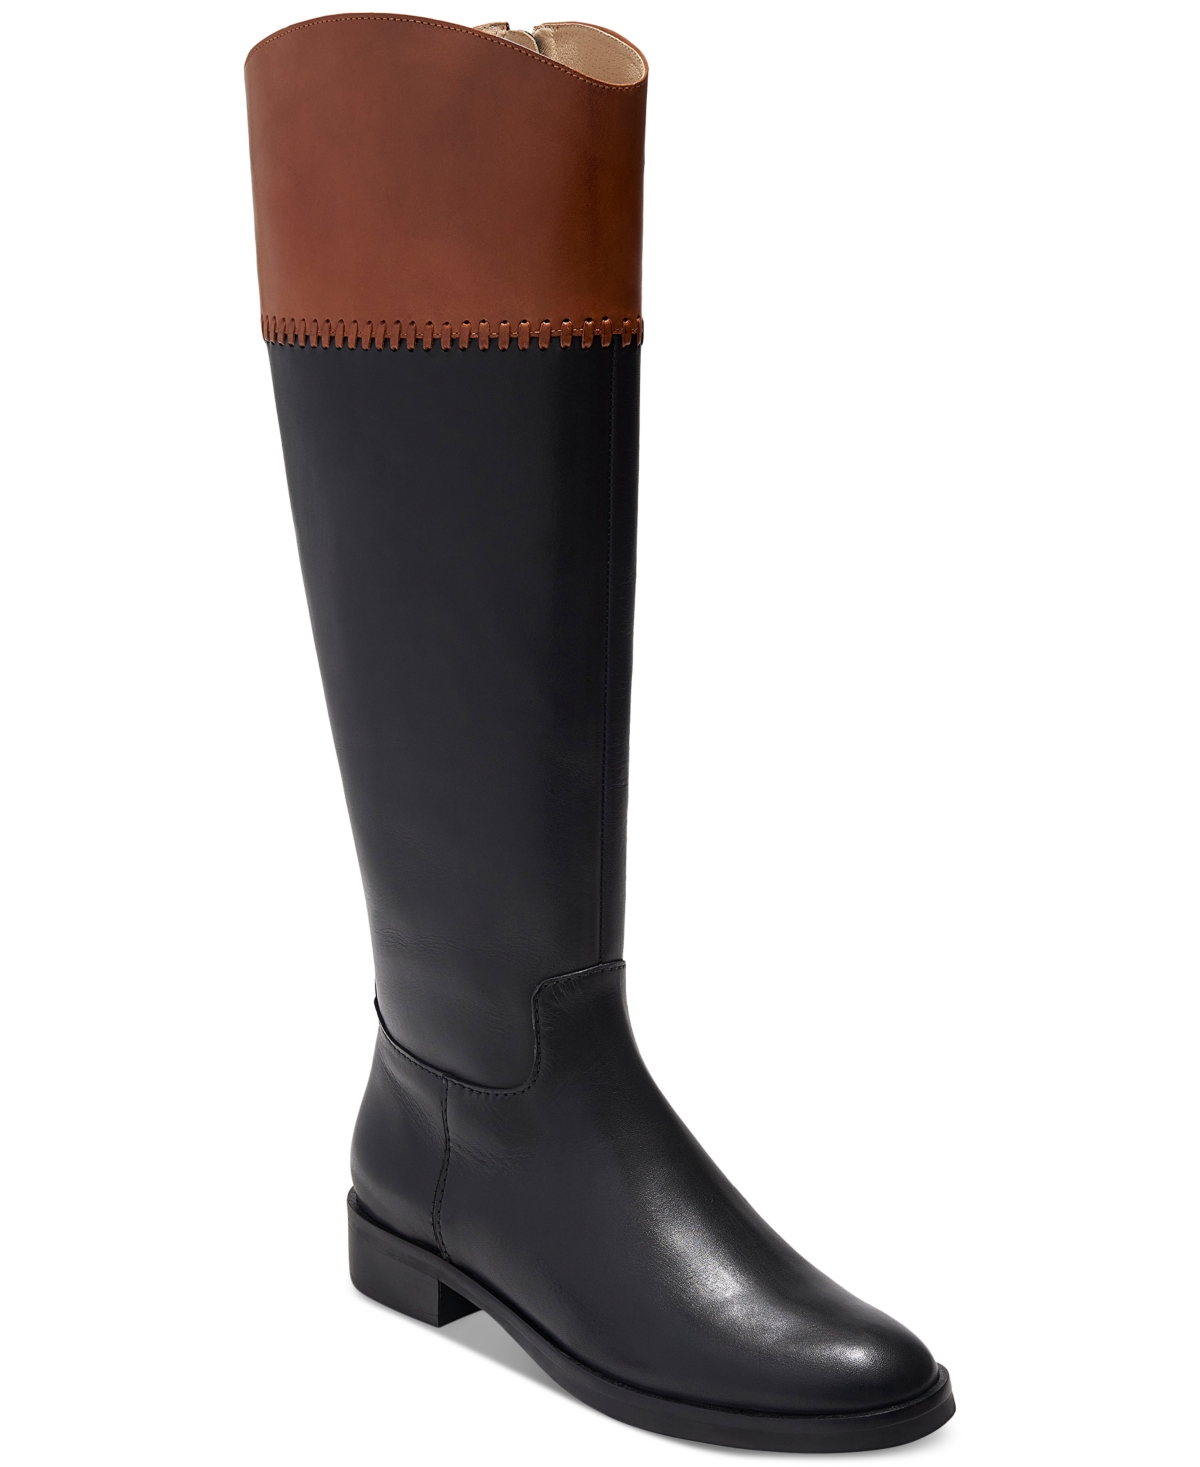 Women's Adaline Whip-Stitch Riding Boots - Black, Brown